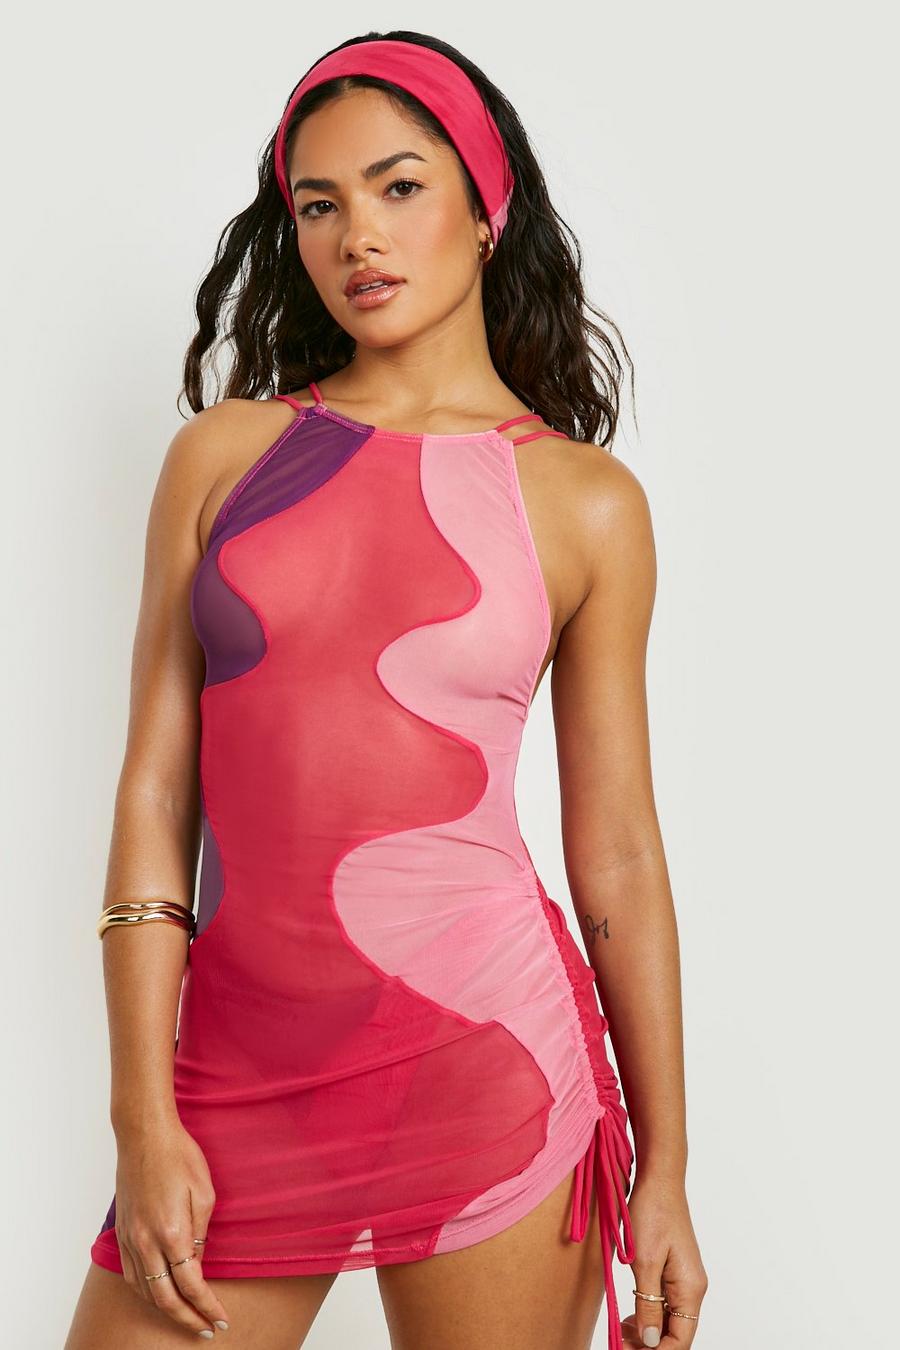 ורוד rosa שמלת חוף מיני מחטבת מבד רשת עם קפלים וכתפיות דקות